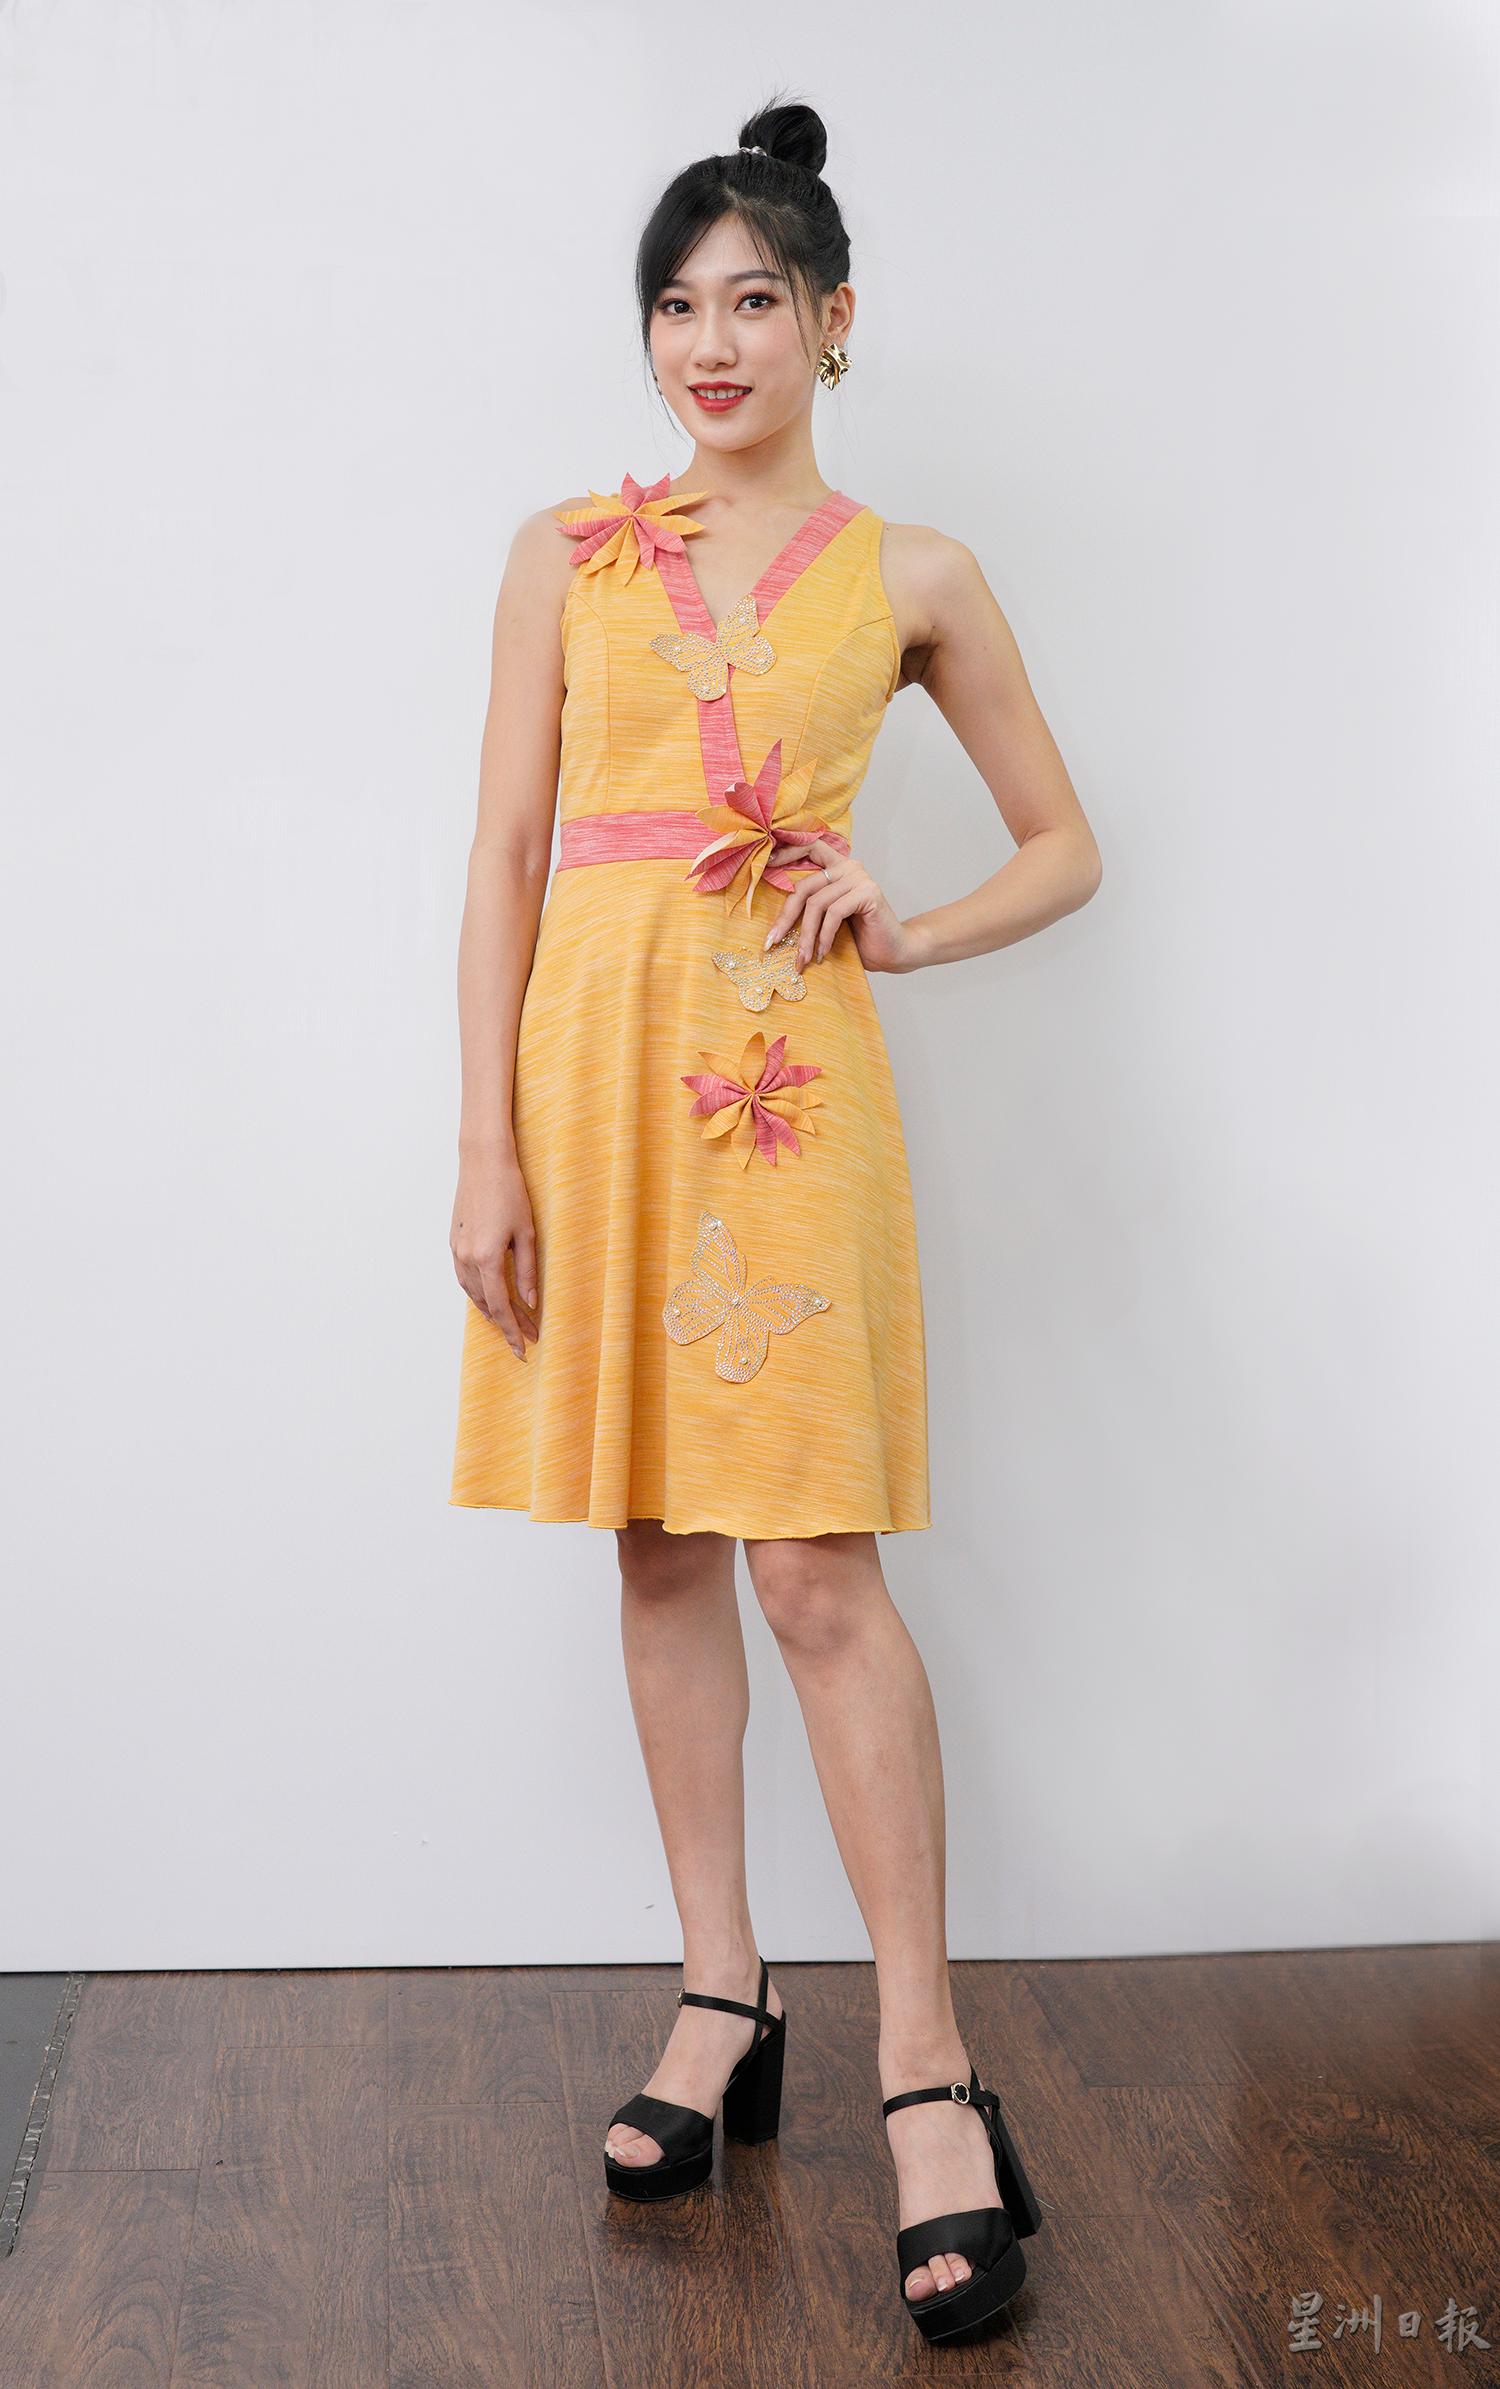 黄色的改良和服式连衣裙，手剪的花朵缀以其中，穿出柔美风情。

